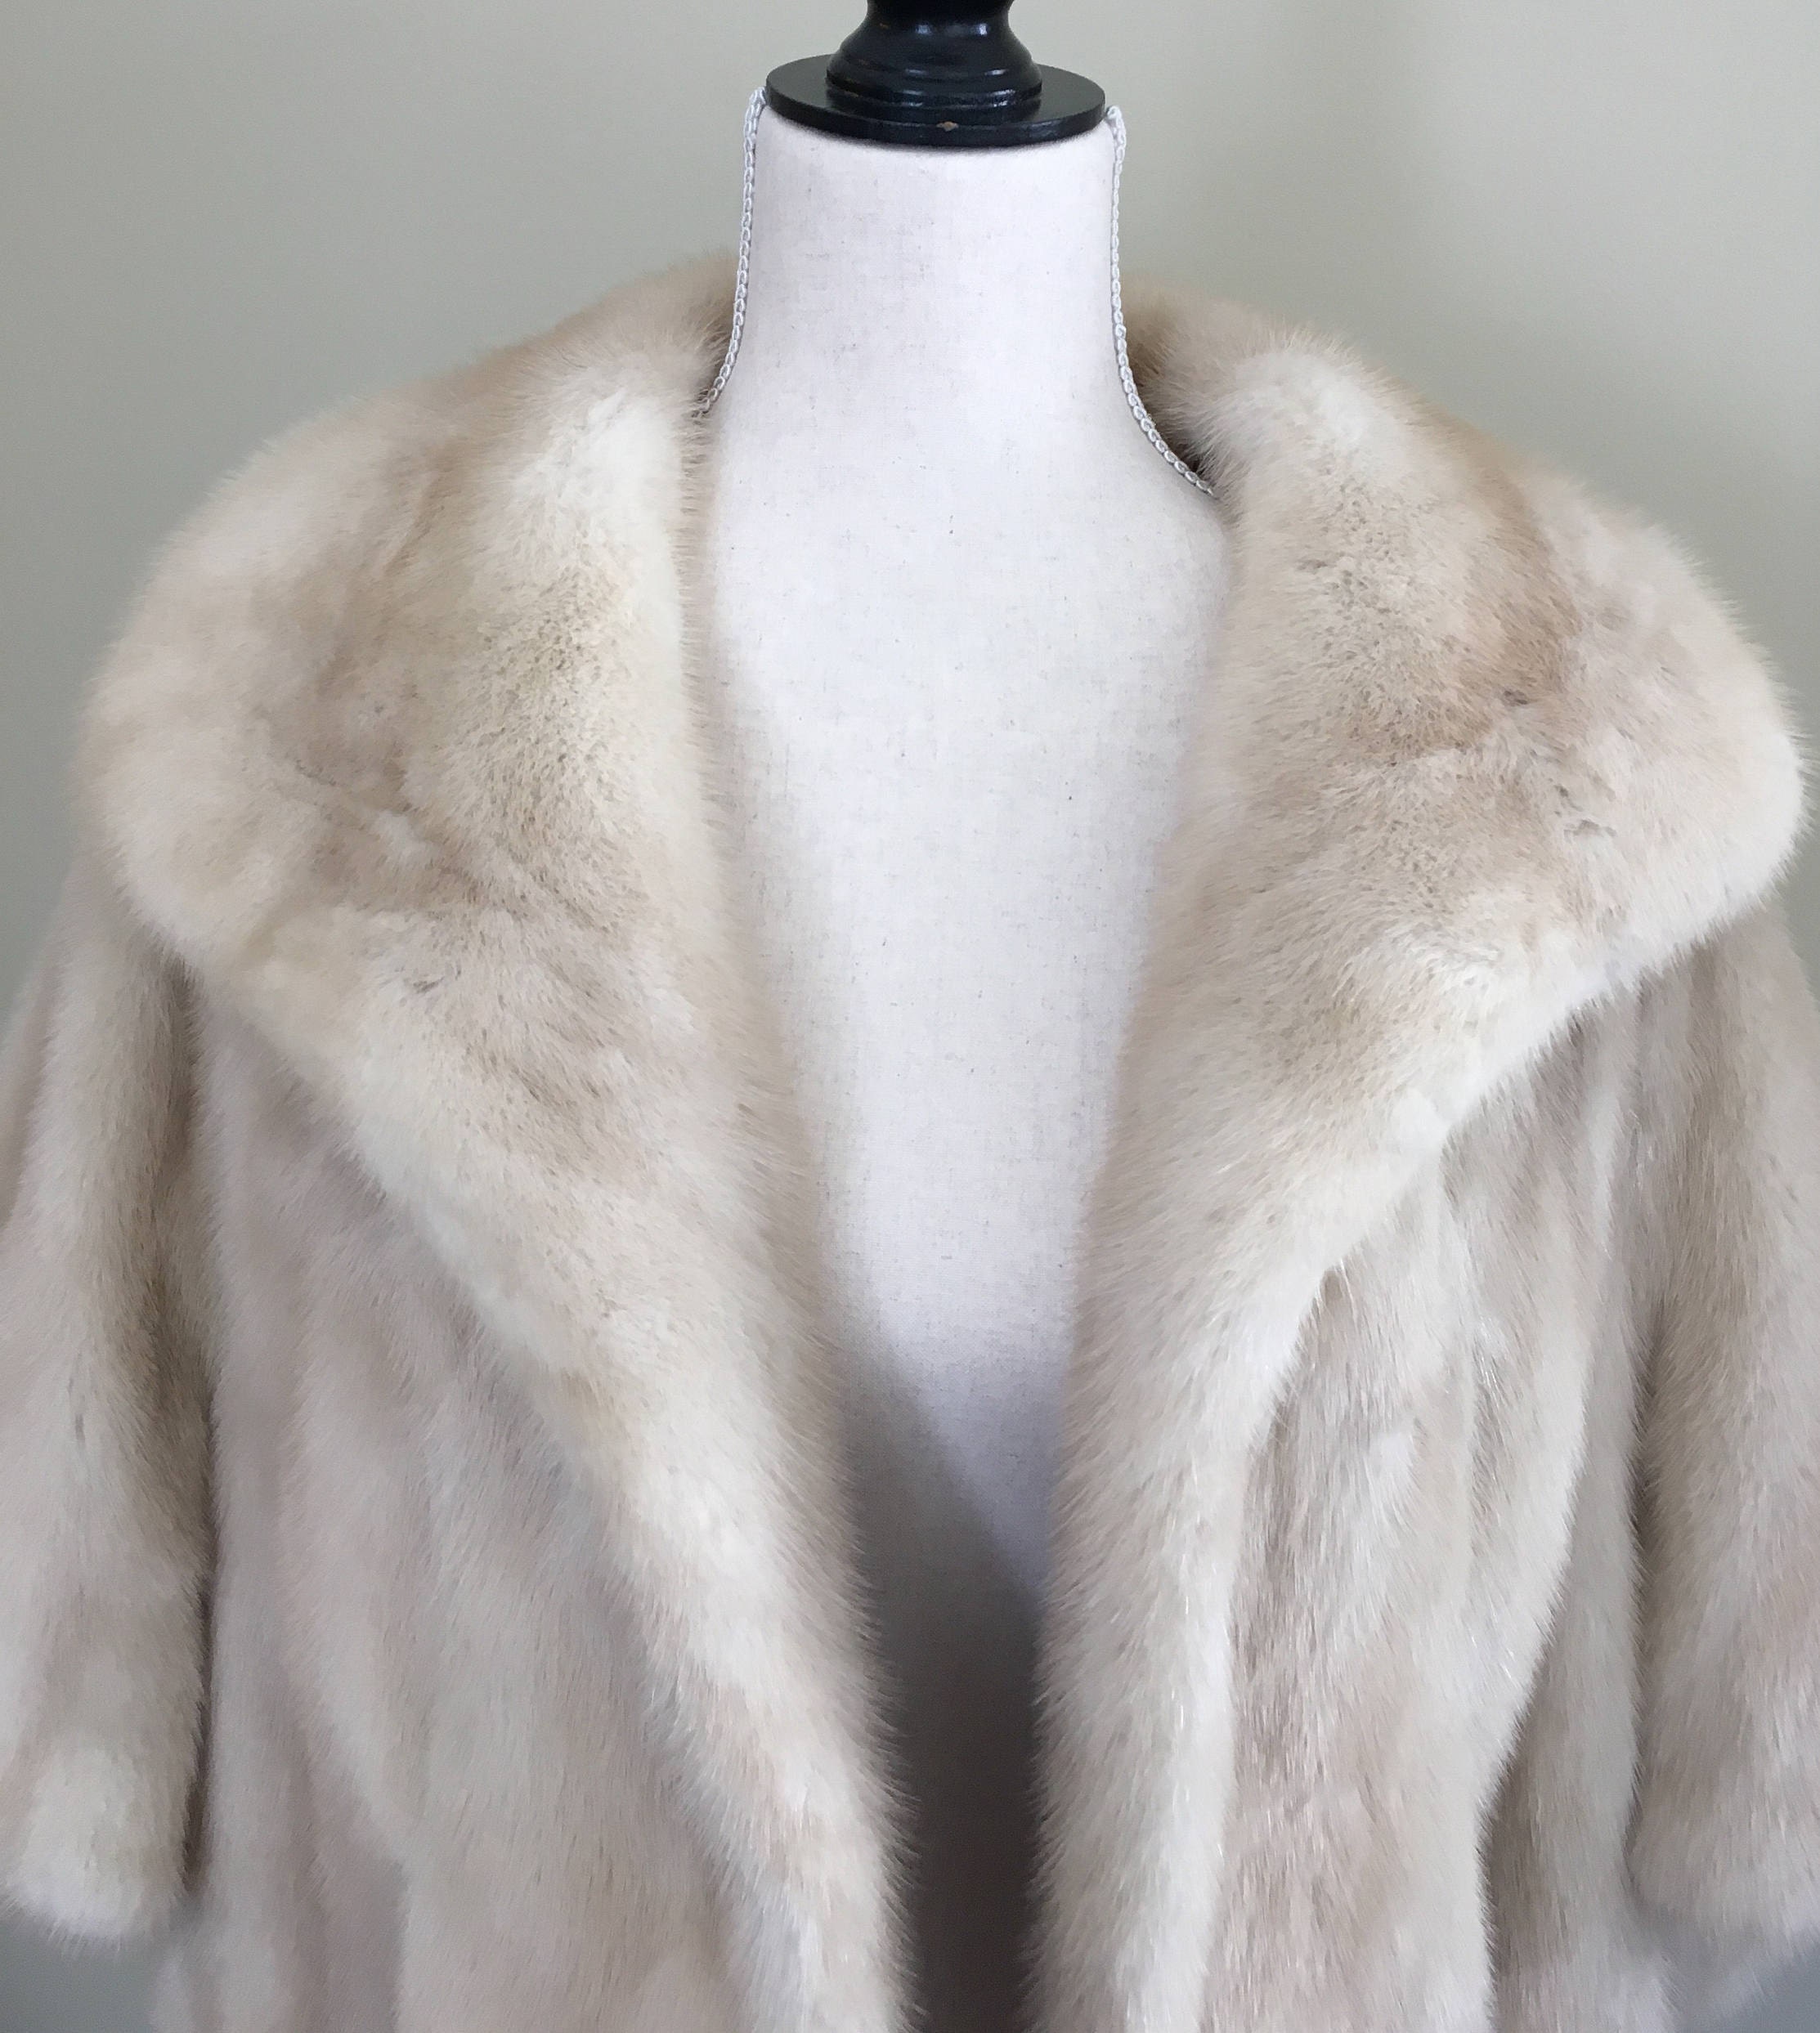 RESERVED FOR J Vintage Blonde Mink Fur Capelet Stole Jacket Bolero 50s ...